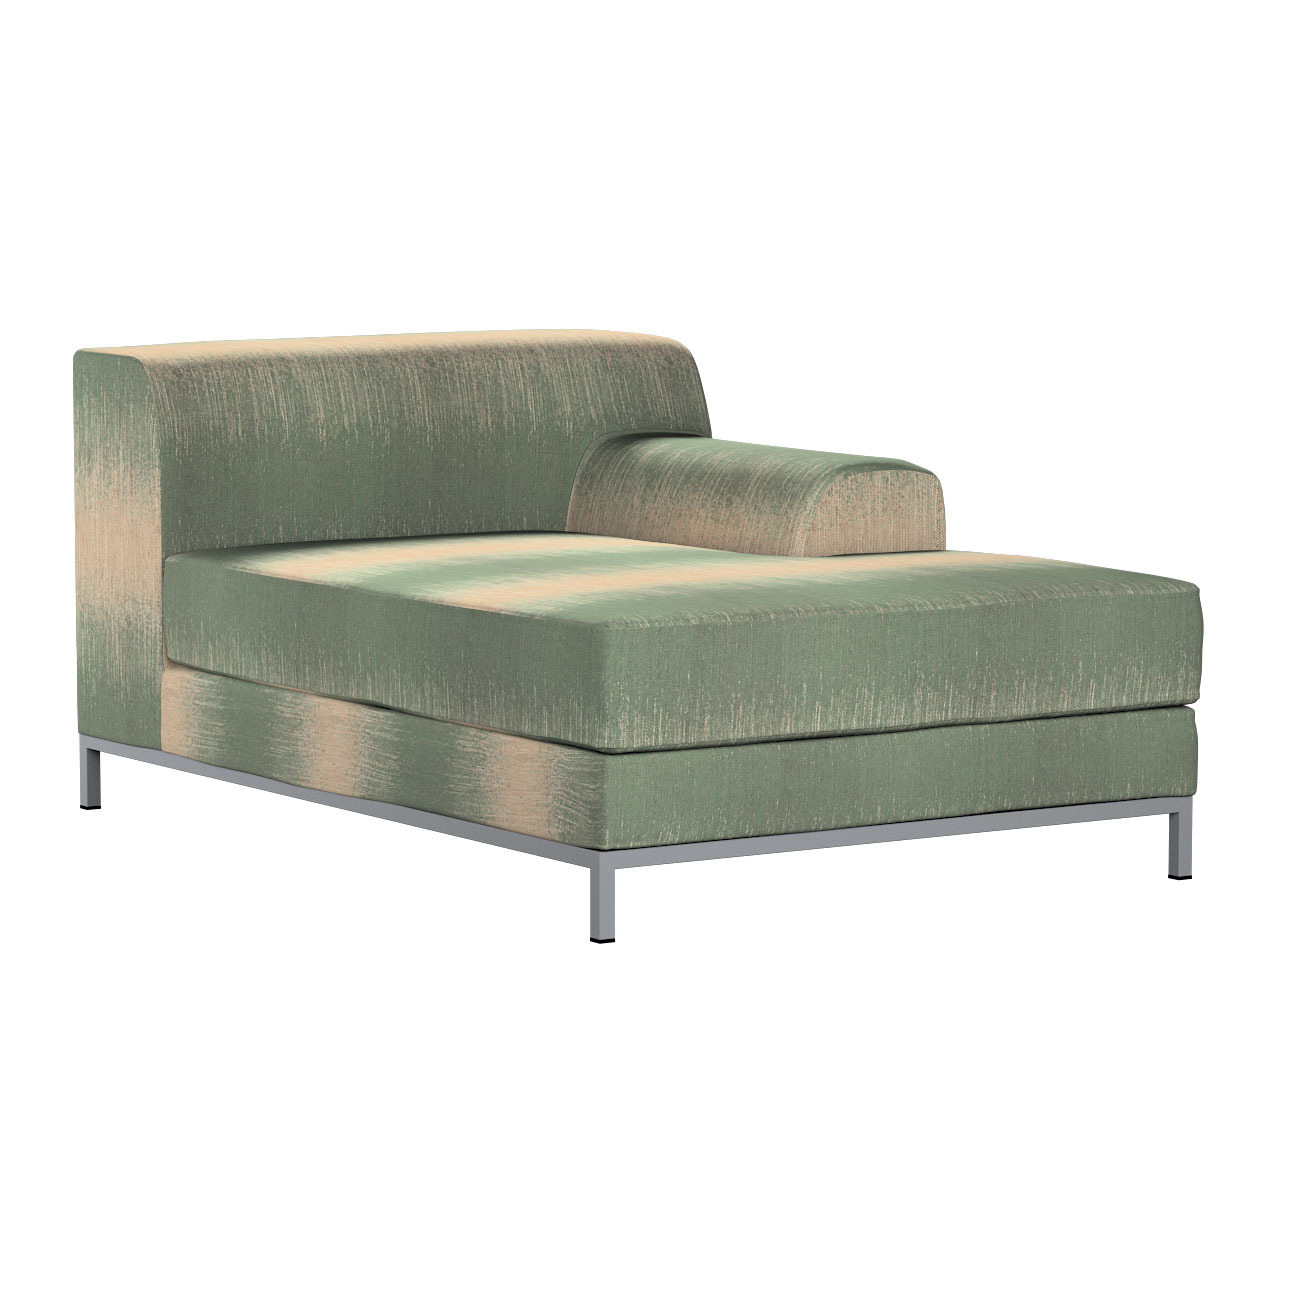 Bezug für Kramfors Sofa Recamiere rechts, grün-beige, Bezug für Recamiere r günstig online kaufen